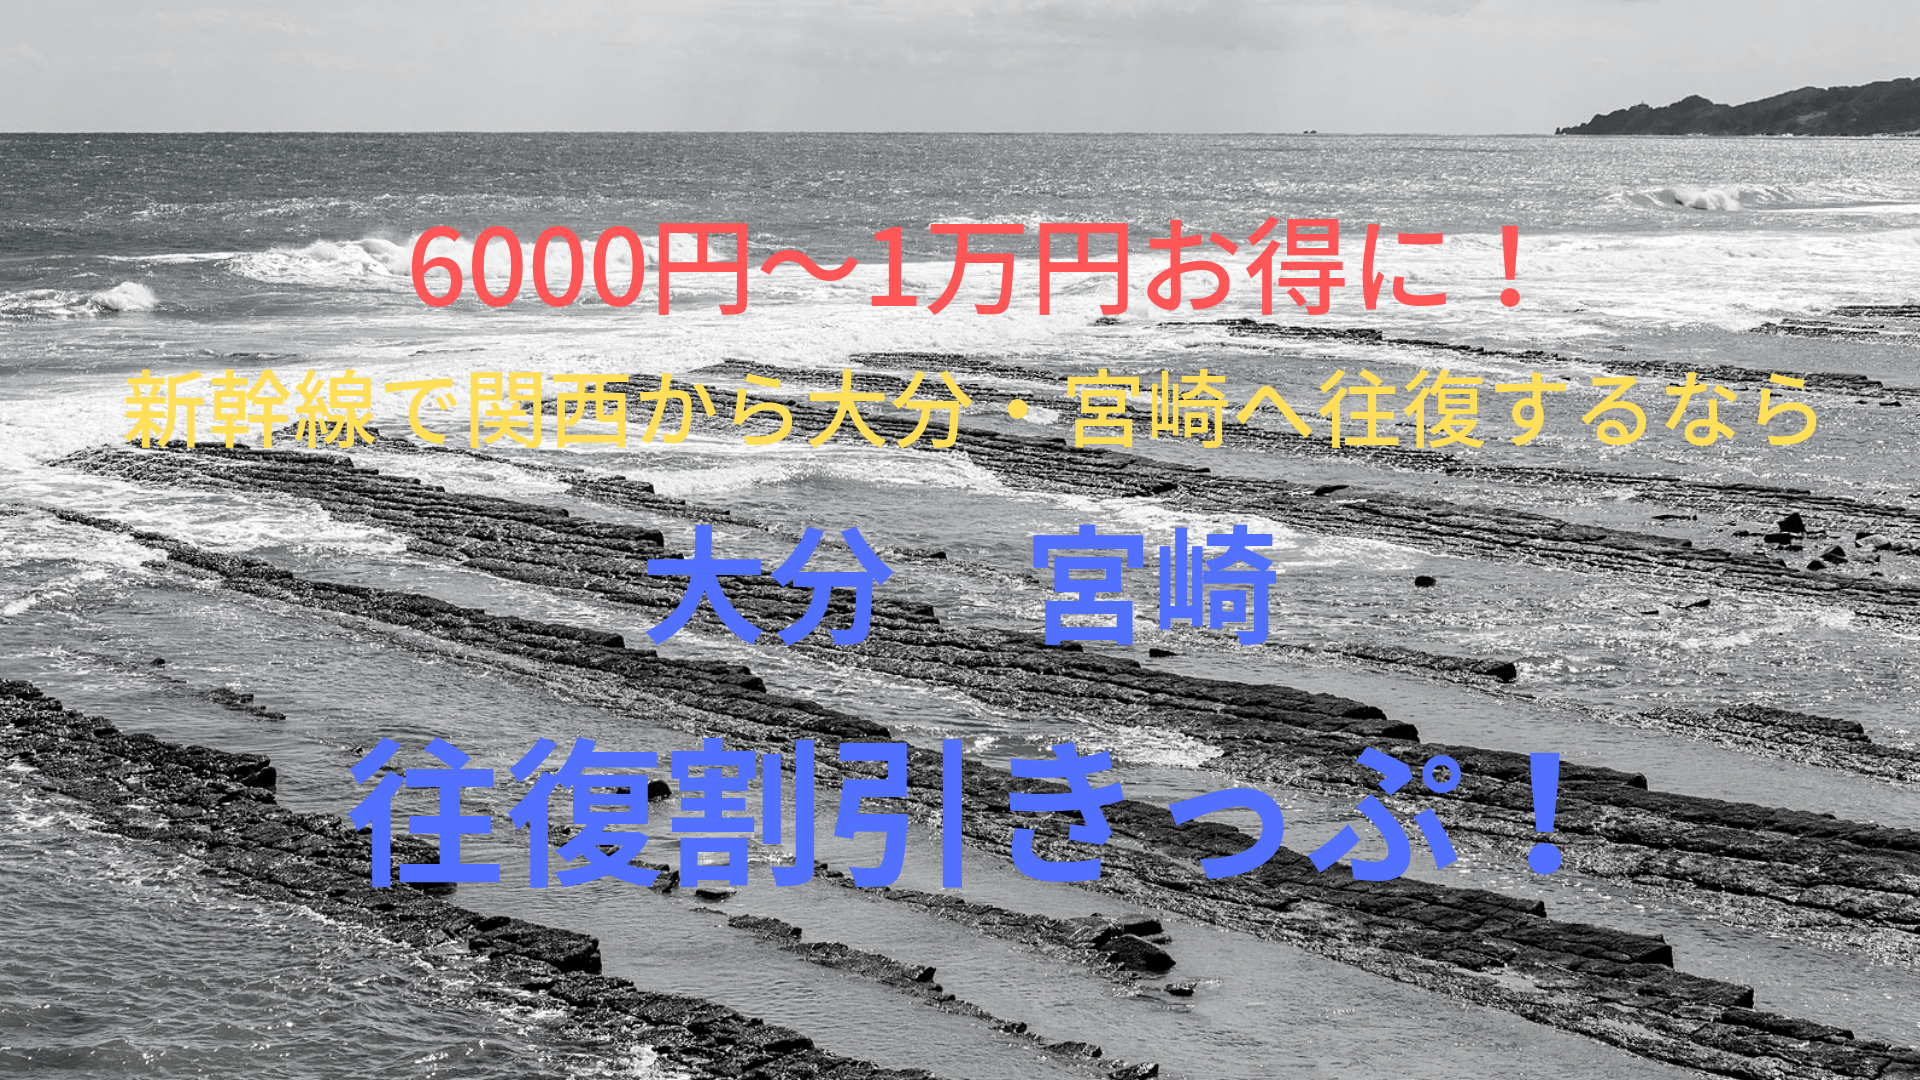 6000円 1万円お得 関西から大分 宮崎へは往復割引きっぷ 新幹線 ばしたく交通